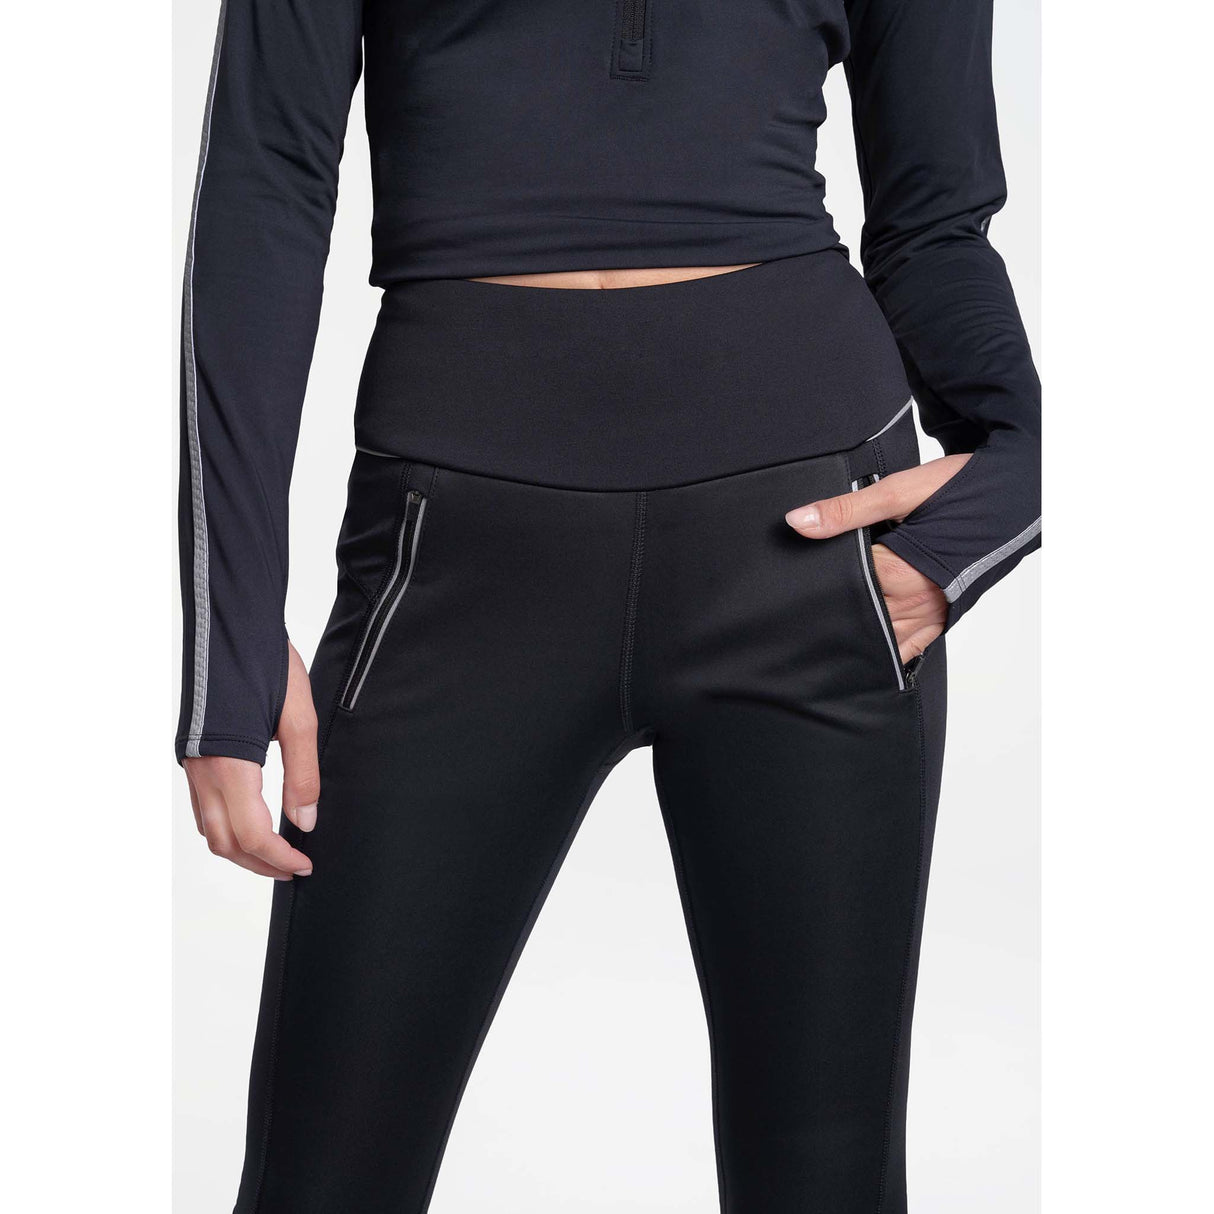 Lolë Trek leggings à taille haute pour femme noir details poches